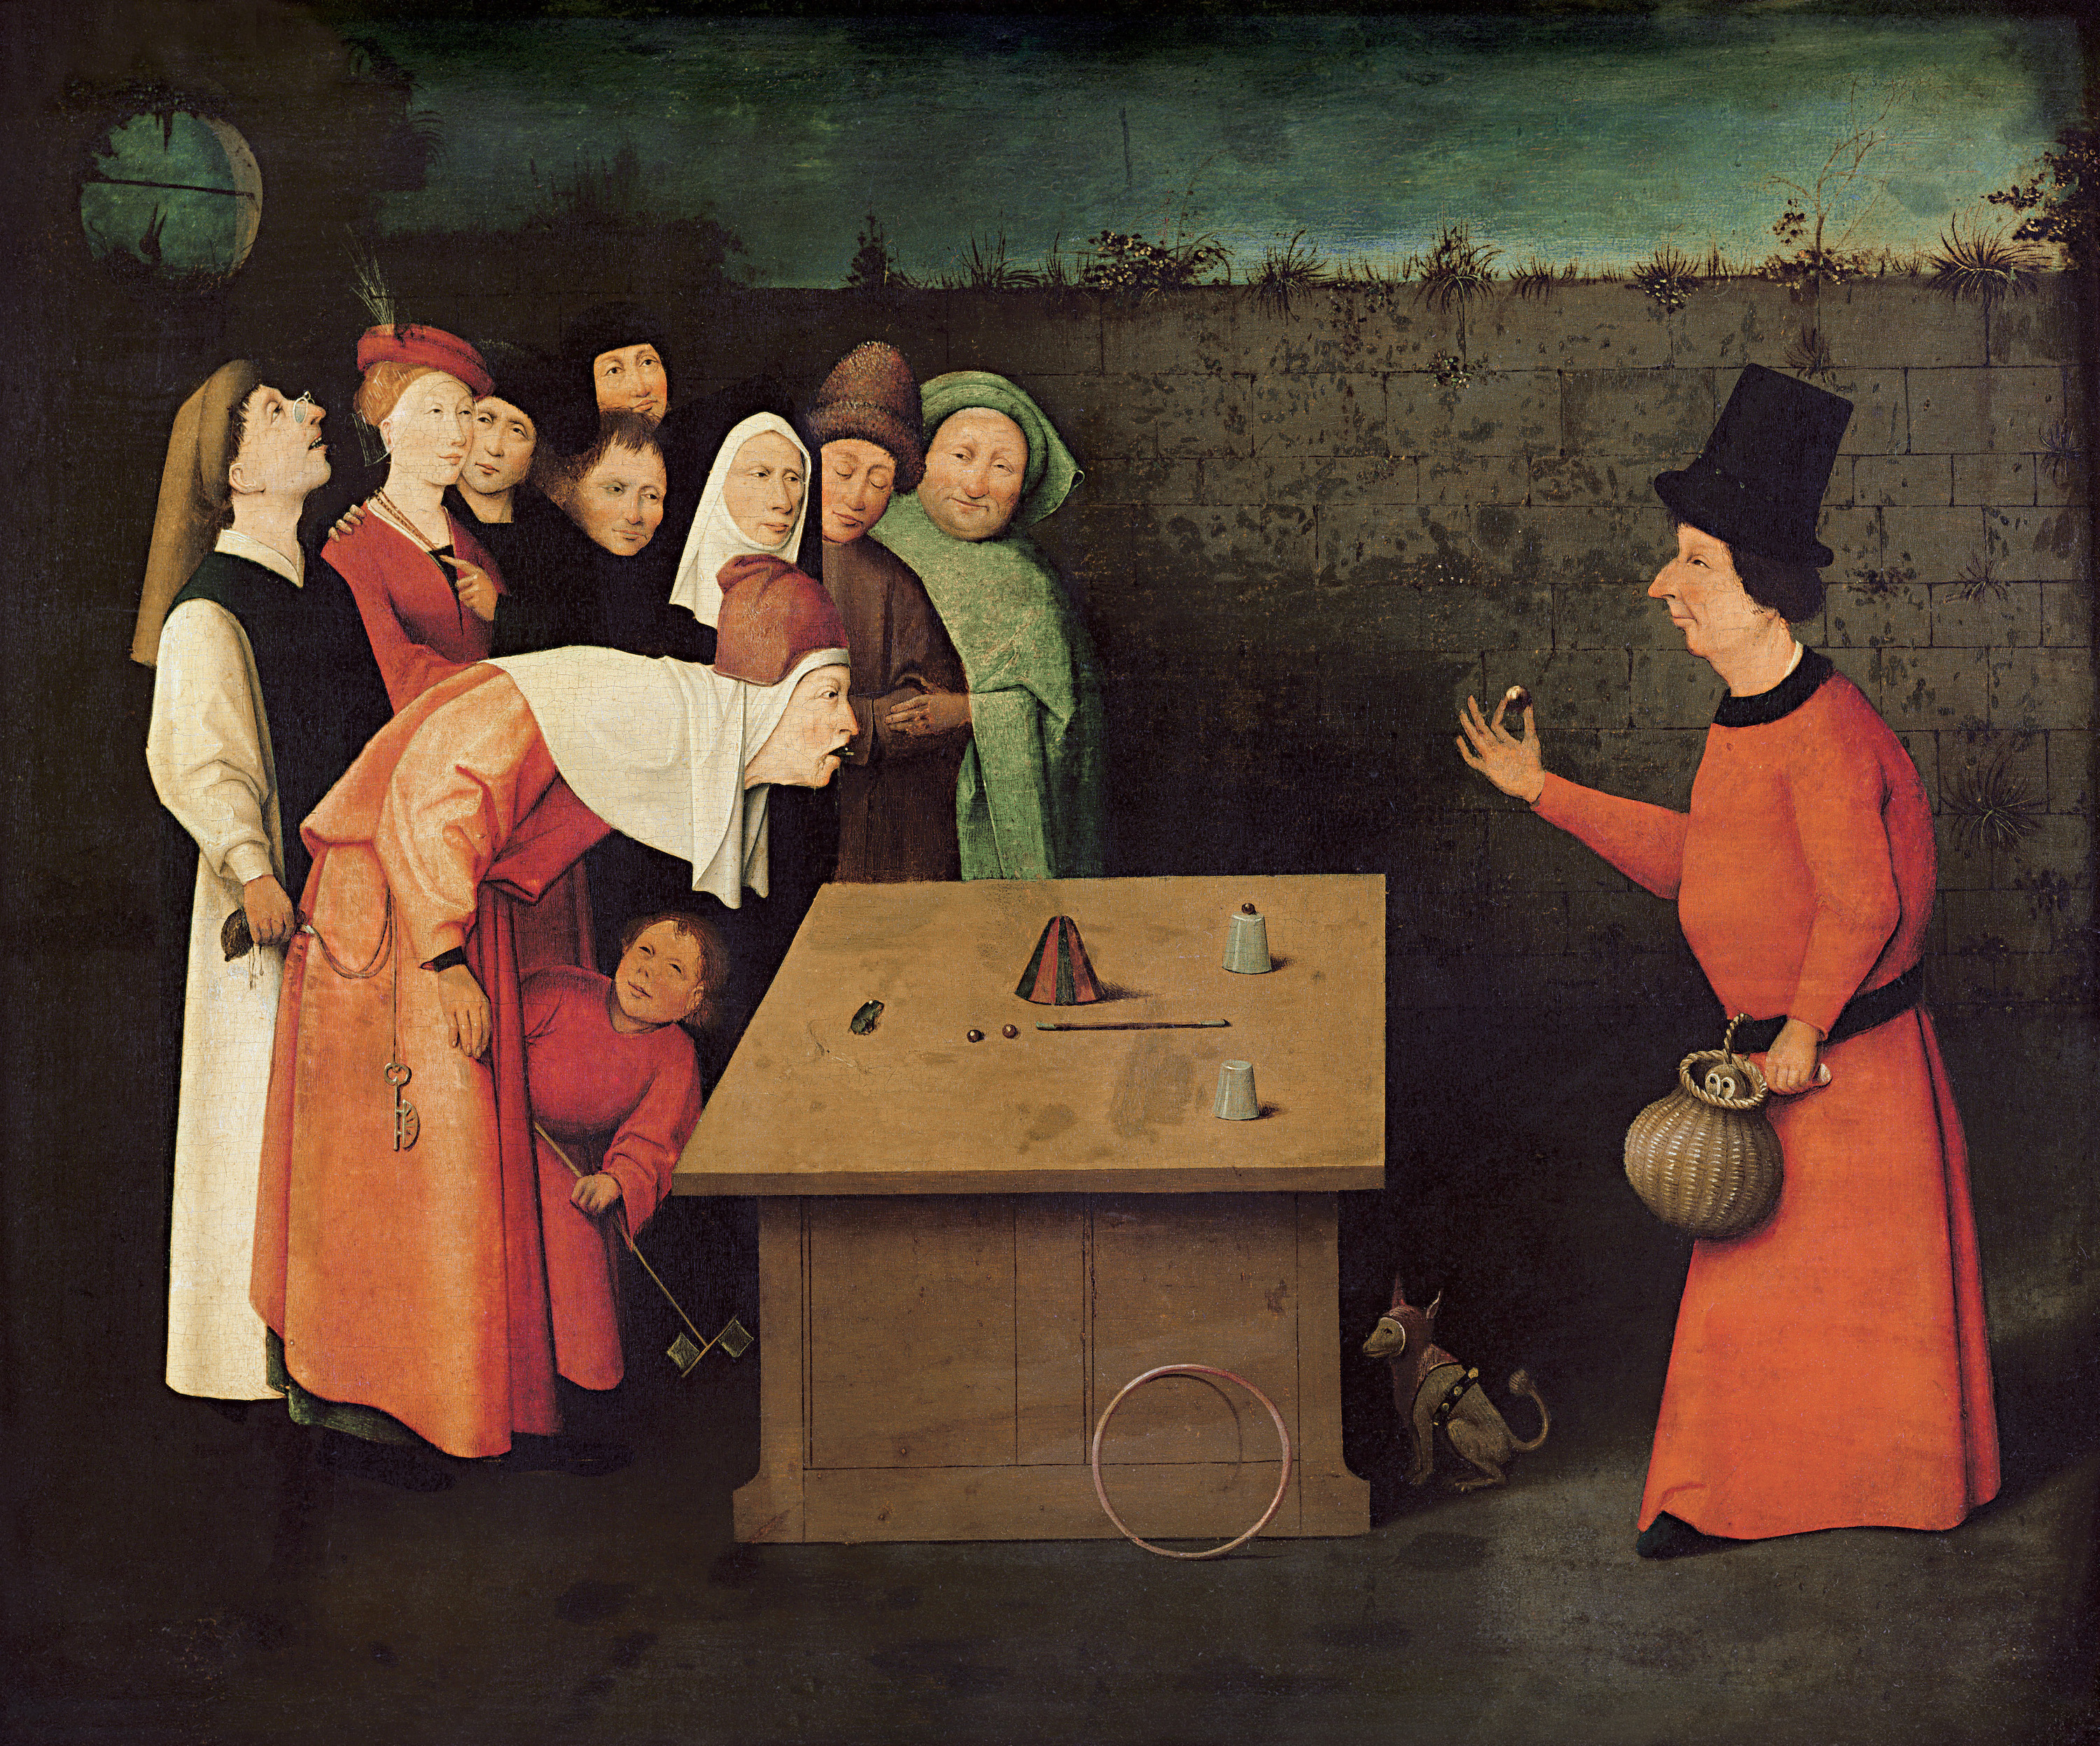 Der Gaukler by Hieronymus Bosch - zwischen 1496 und 1516 - 53 x 65 cm 